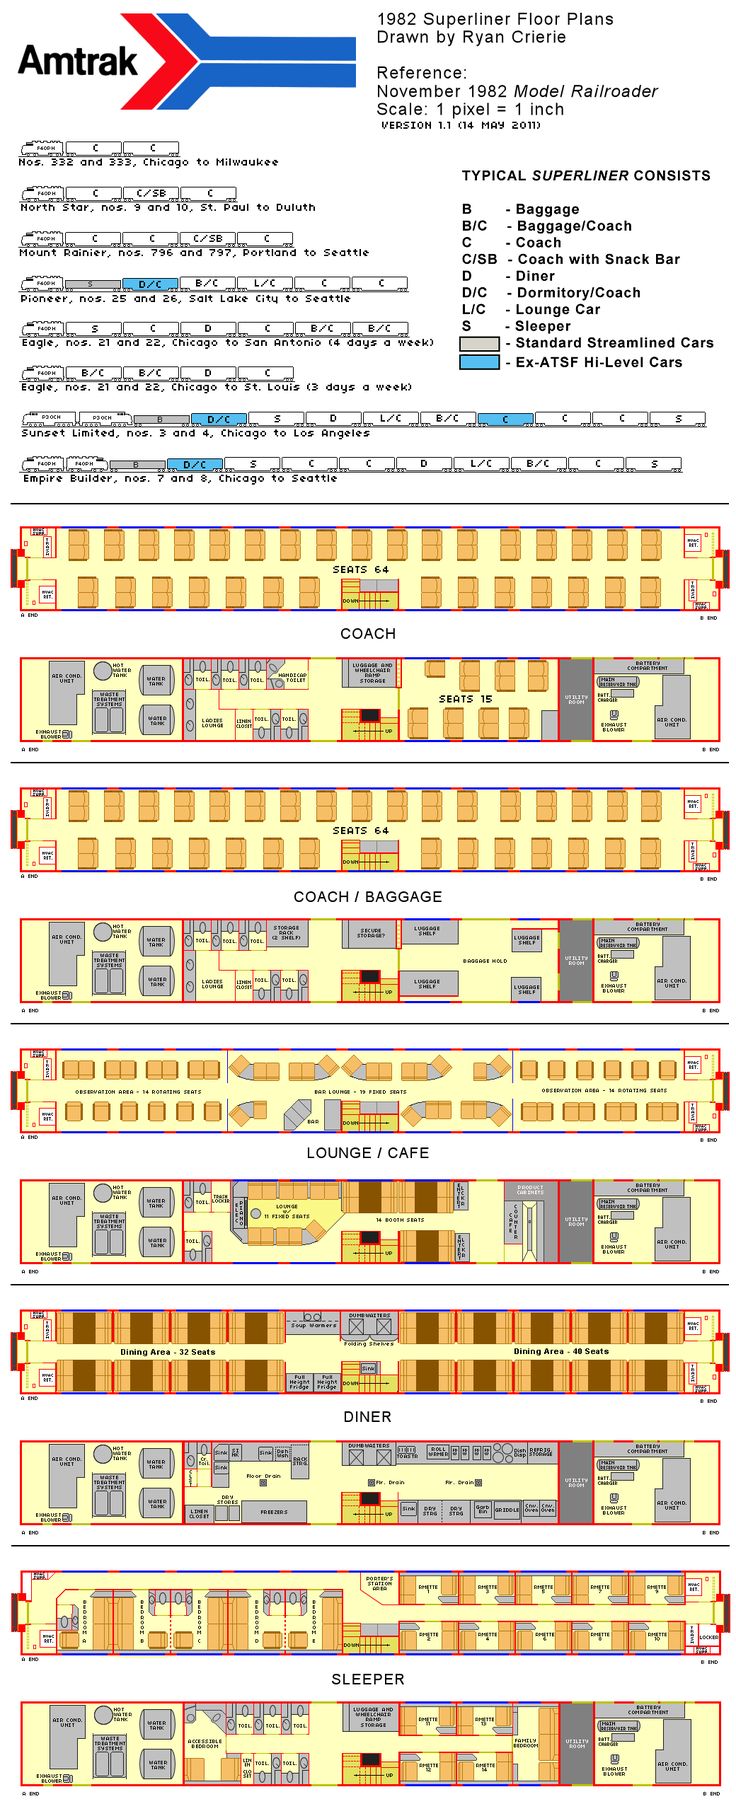 amtrak superliner flooro plans 1982 Diagrams, Drawings